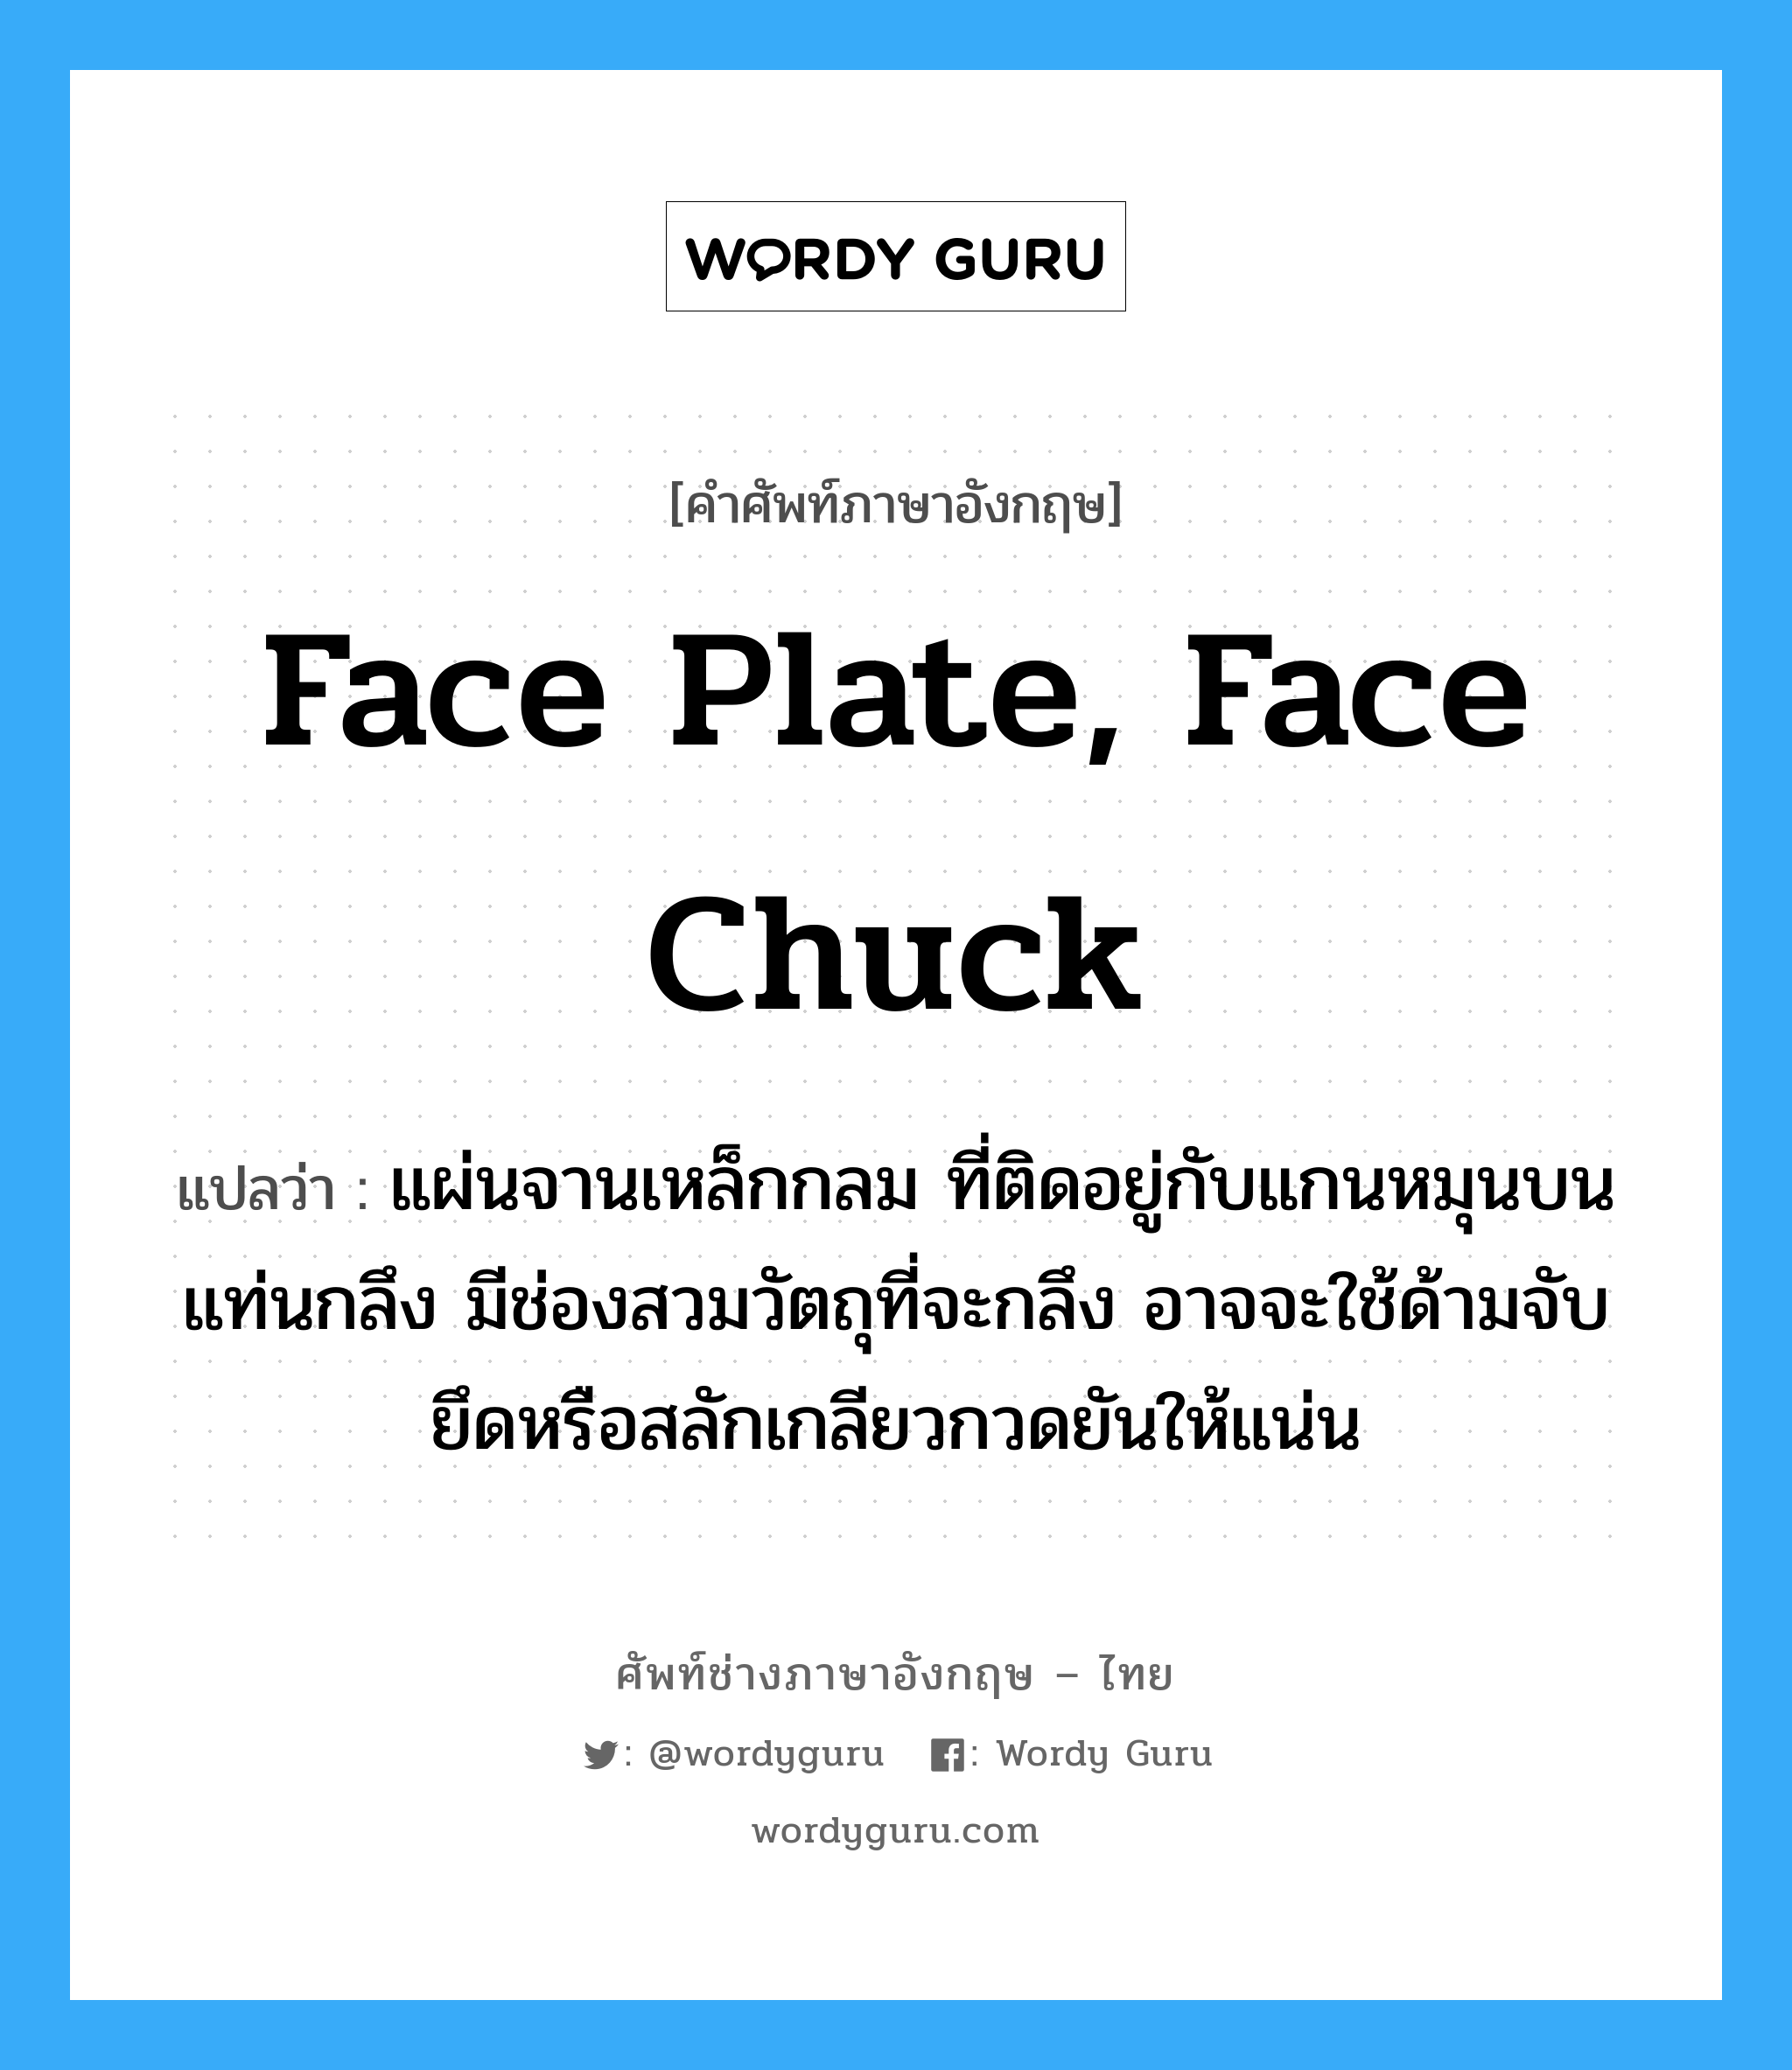 face plate, face chuck แปลว่า?, คำศัพท์ช่างภาษาอังกฤษ - ไทย face plate, face chuck คำศัพท์ภาษาอังกฤษ face plate, face chuck แปลว่า แผ่นจานเหล็กกลม ที่ติดอยู่กับแกนหมุนบนแท่นกลึง มีช่องสวมวัตถุที่จะกลึง อาจจะใช้ด้ามจับยึดหรือสลักเกลียวกวดยันให้แน่น